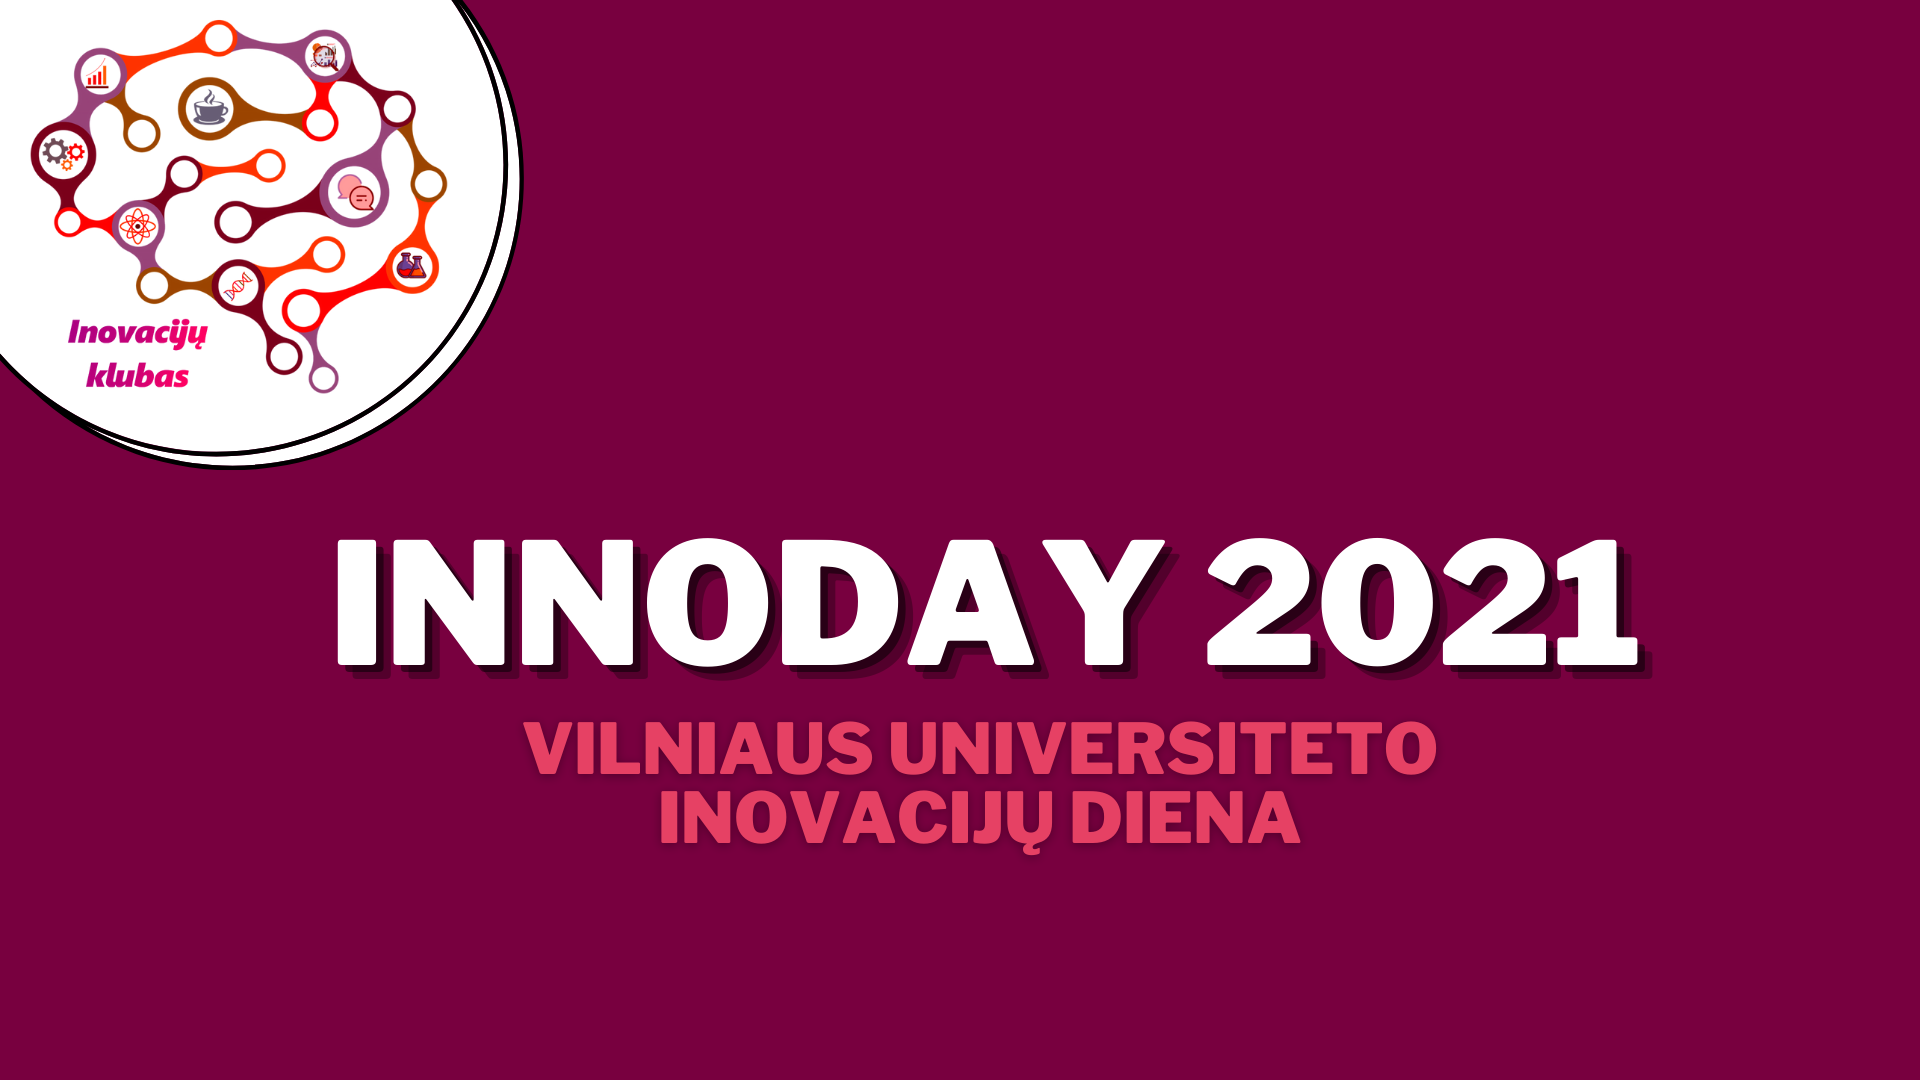 Vilniaus universiteto Inovacijų diena INNOday 2021 5